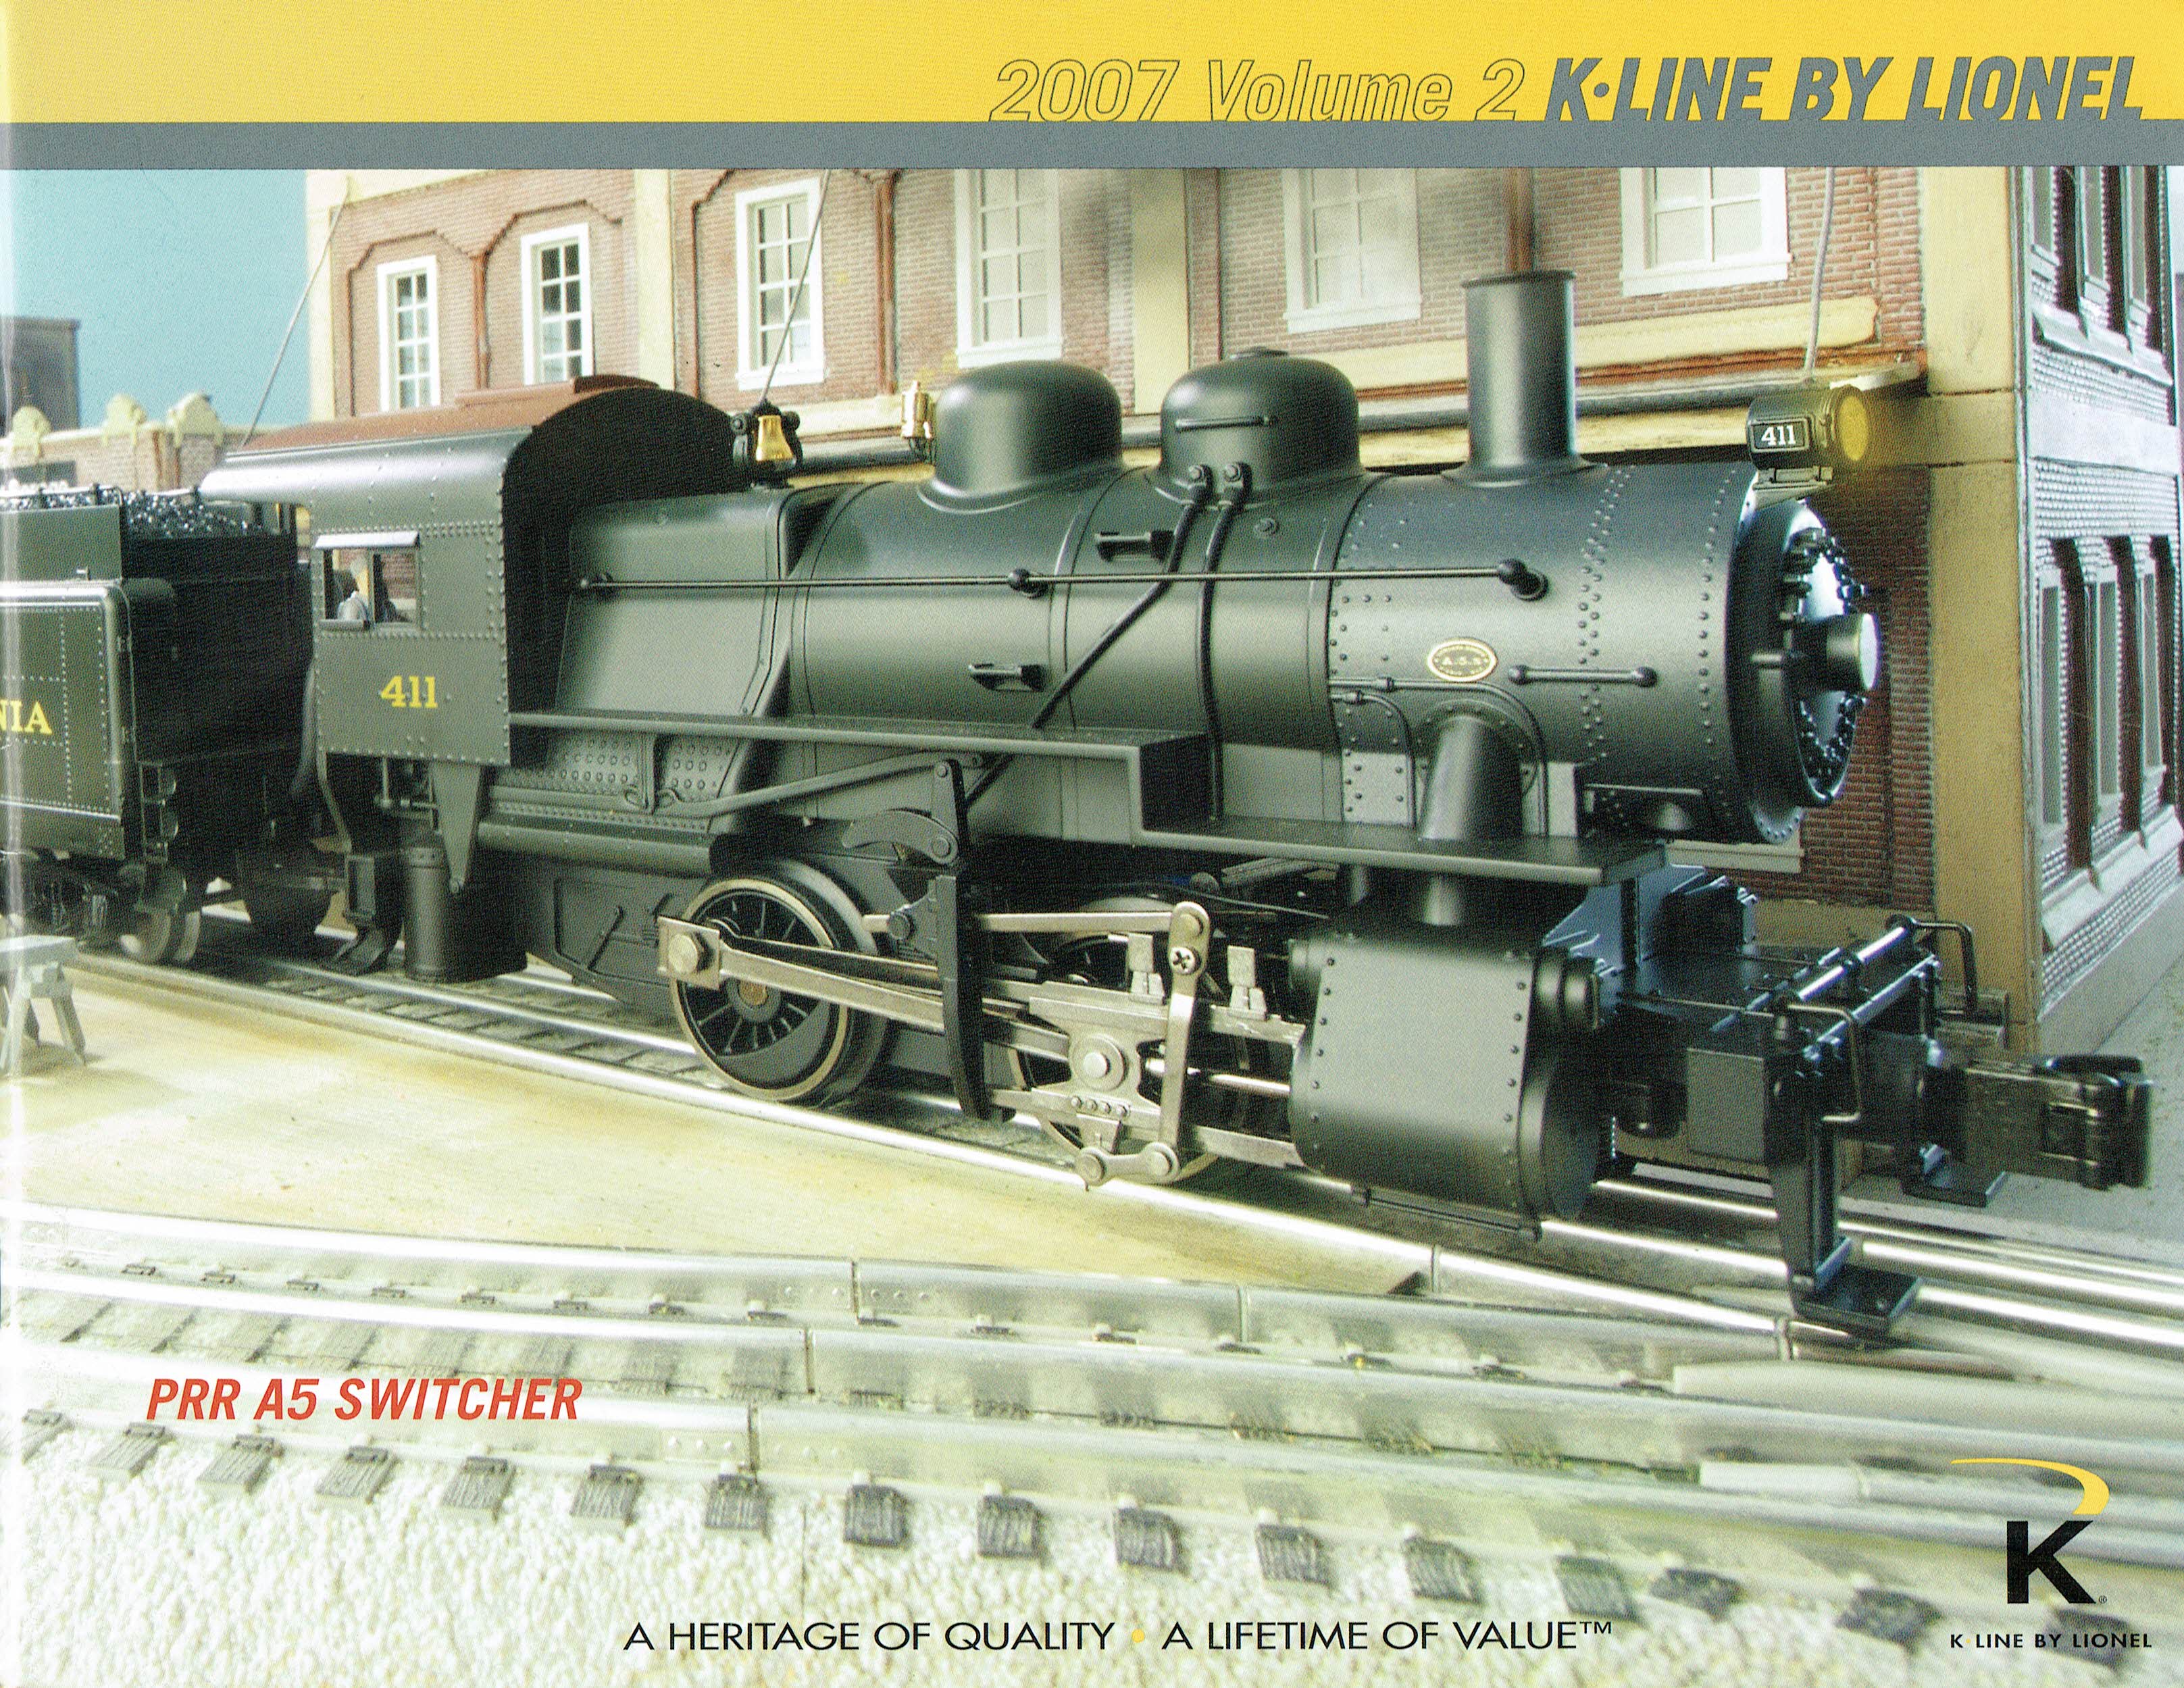 K-Line by Lionel 2007 Volume 2 Catalog image